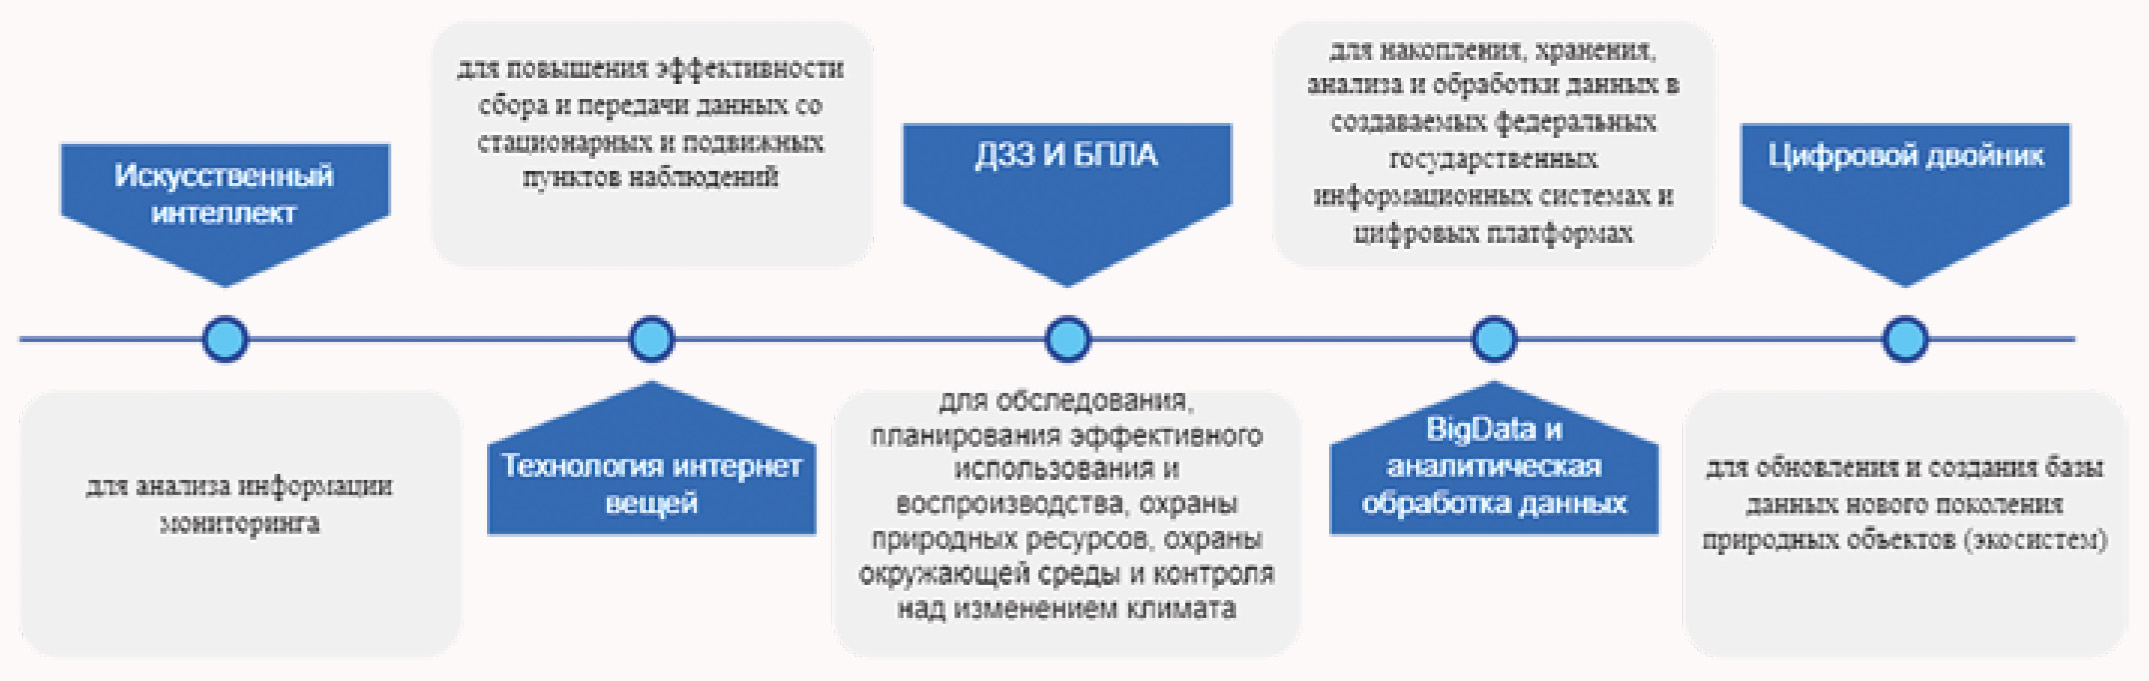 Рис. 2 – Технологии цифровизации экологических знаний в Российской Федерации